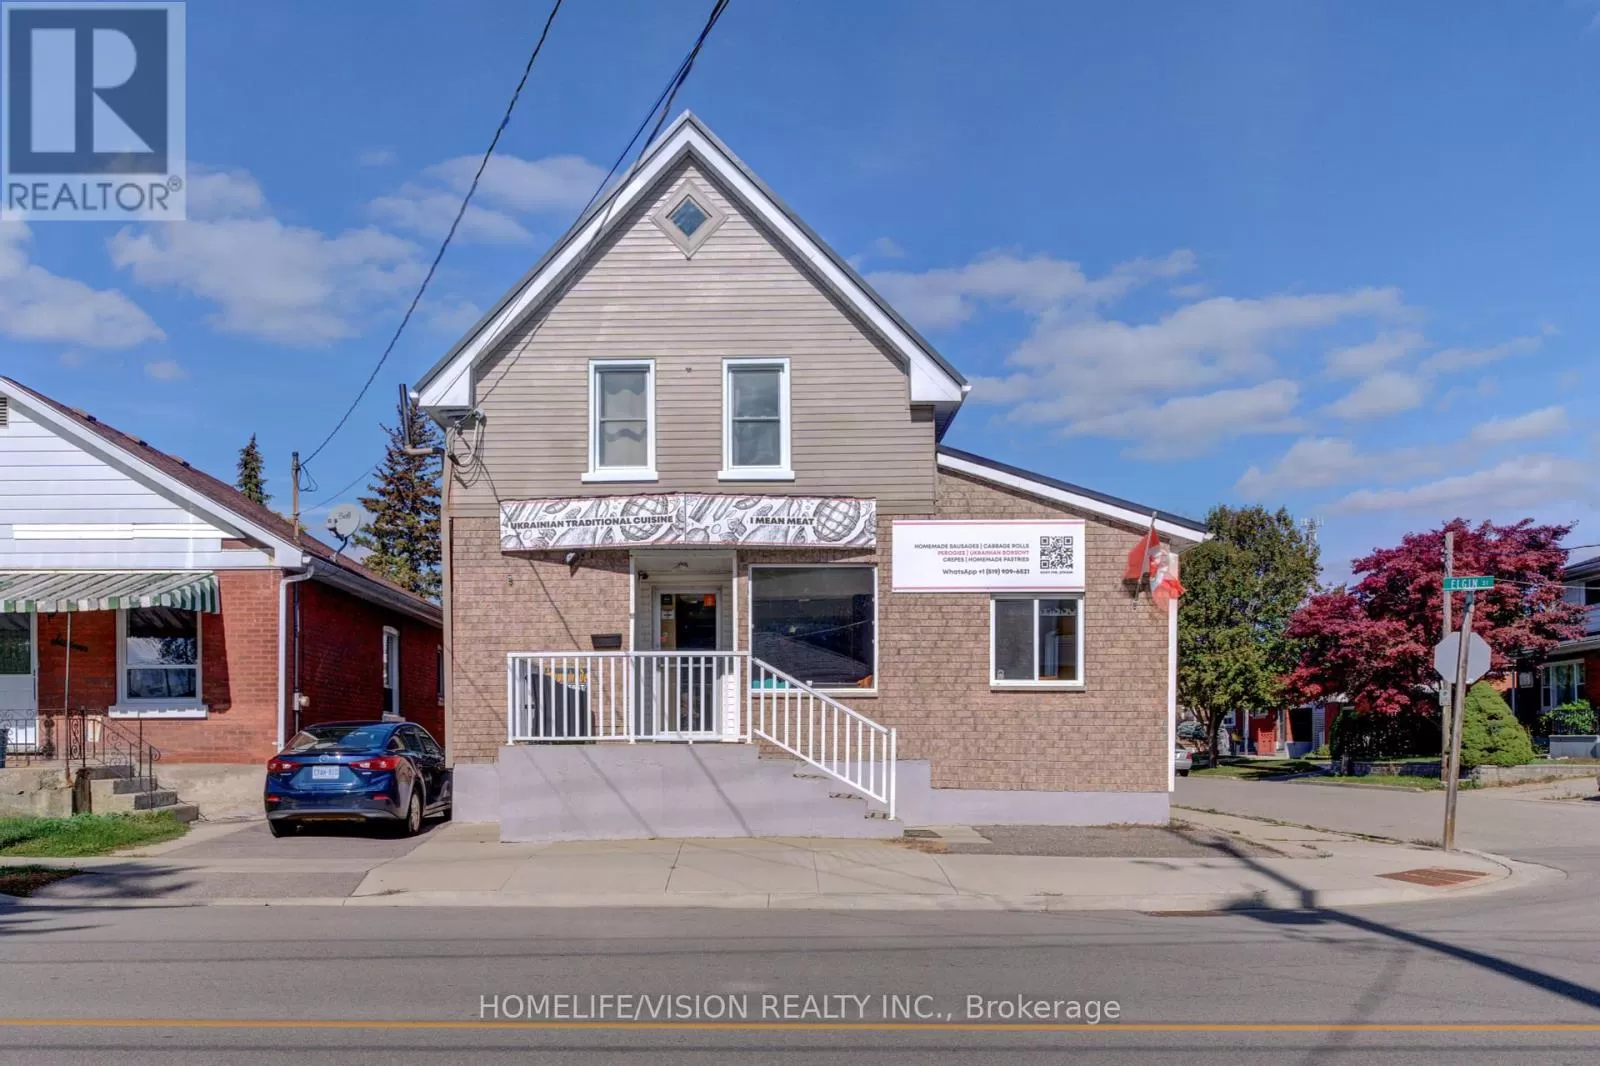 House for rent: 18 Elgin Street, Brantford, Ontario N3R 1E6